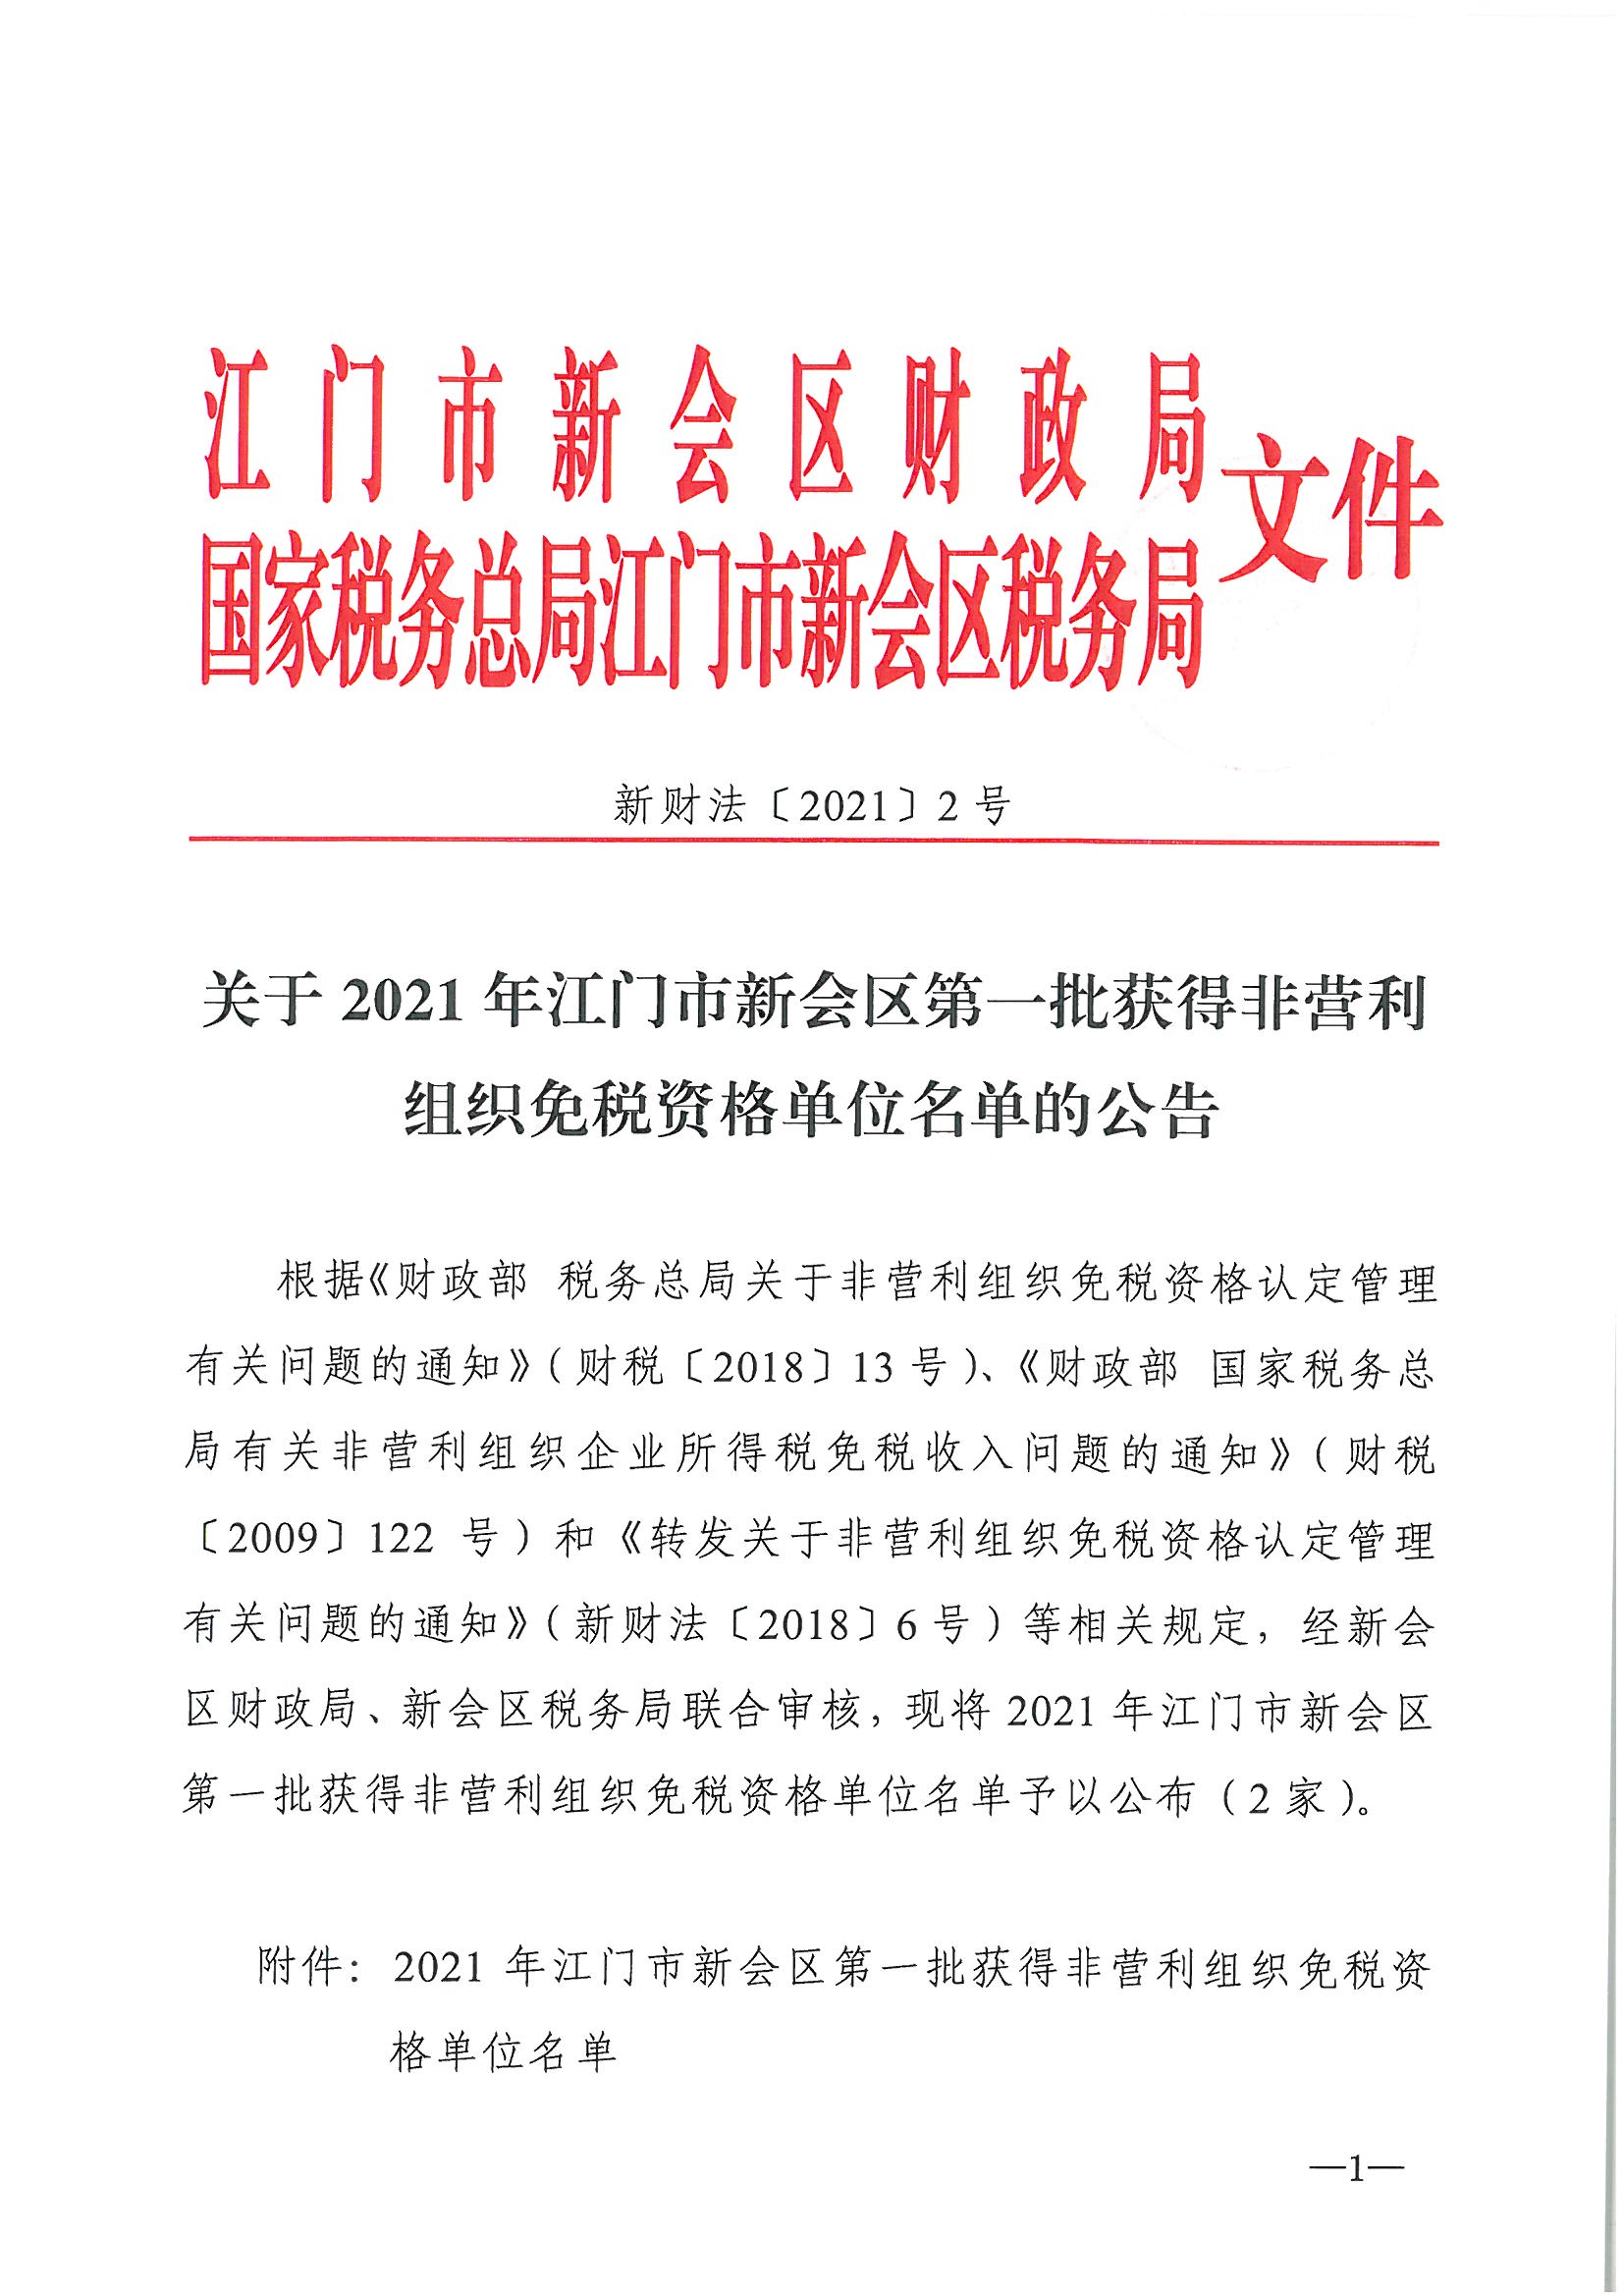 发文__新财法【2021】2号__关于2021年江门市新会区第一批获得非营利组织免税资格单位名单的公告_页面_1.jpg